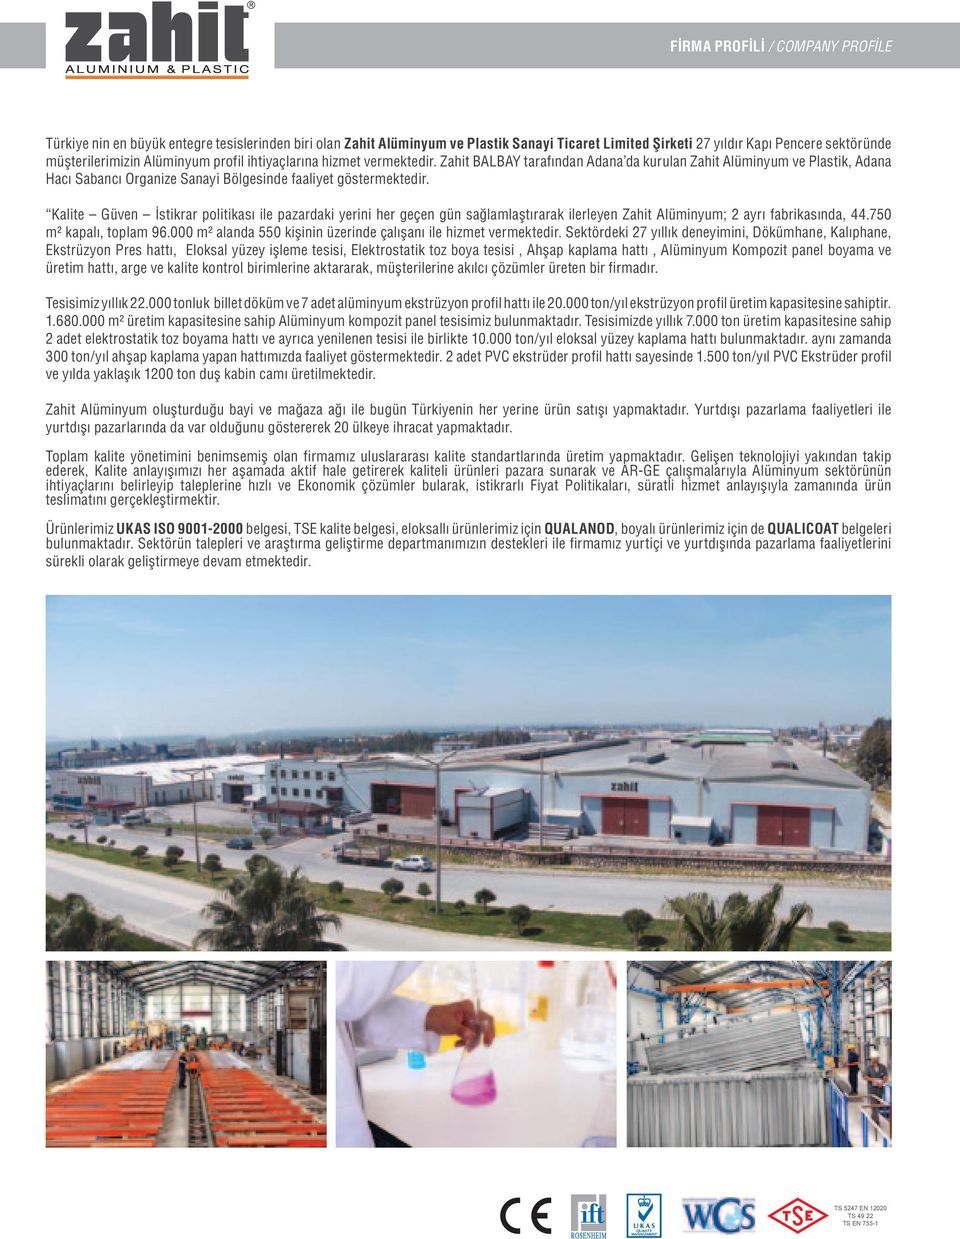 Kalite Güven İstikrar politikası ile pazardaki yerini her geçen gün sağlamlaştırarak ilerleyen Zahit Alüminyum; 2 ayrı fabrikasında, 44.750 m² kapalı, toplam 96.